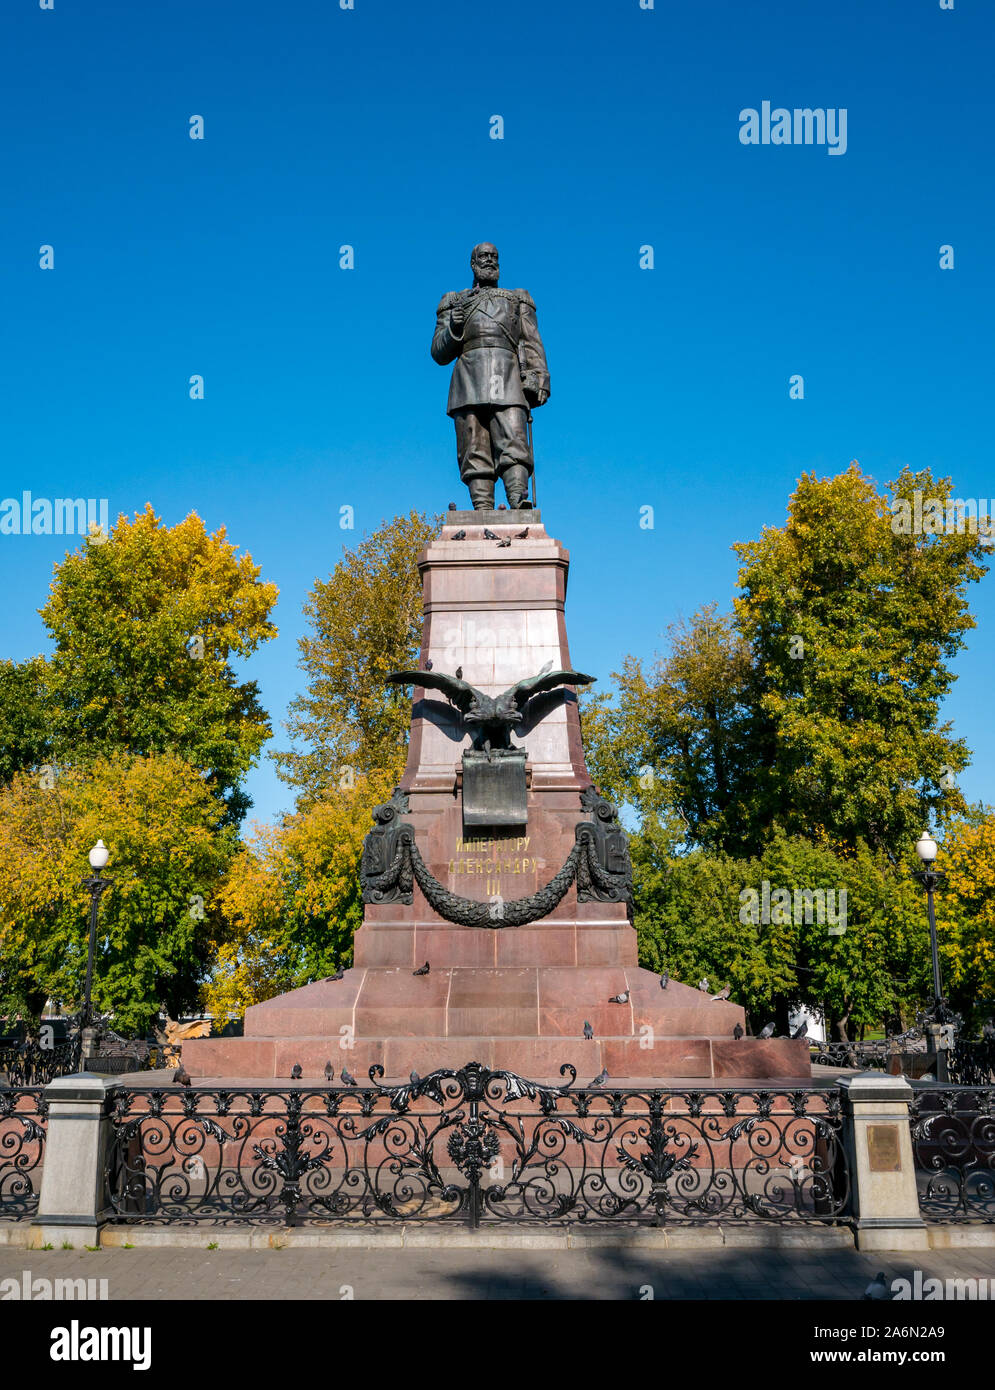 Statue of Russian Emperor Alexander III in city park in Autumn, Irkutsk, Siberia, Russia Stock Photo